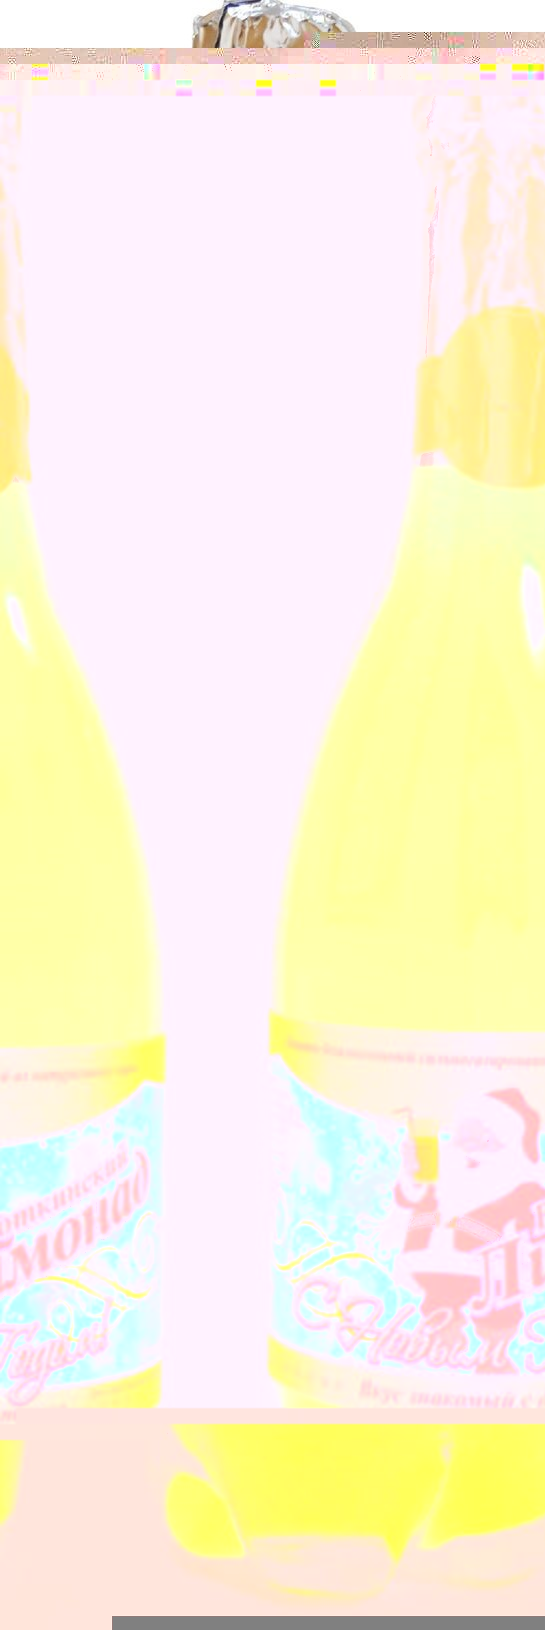 Воткинский лимонад 2.jpg